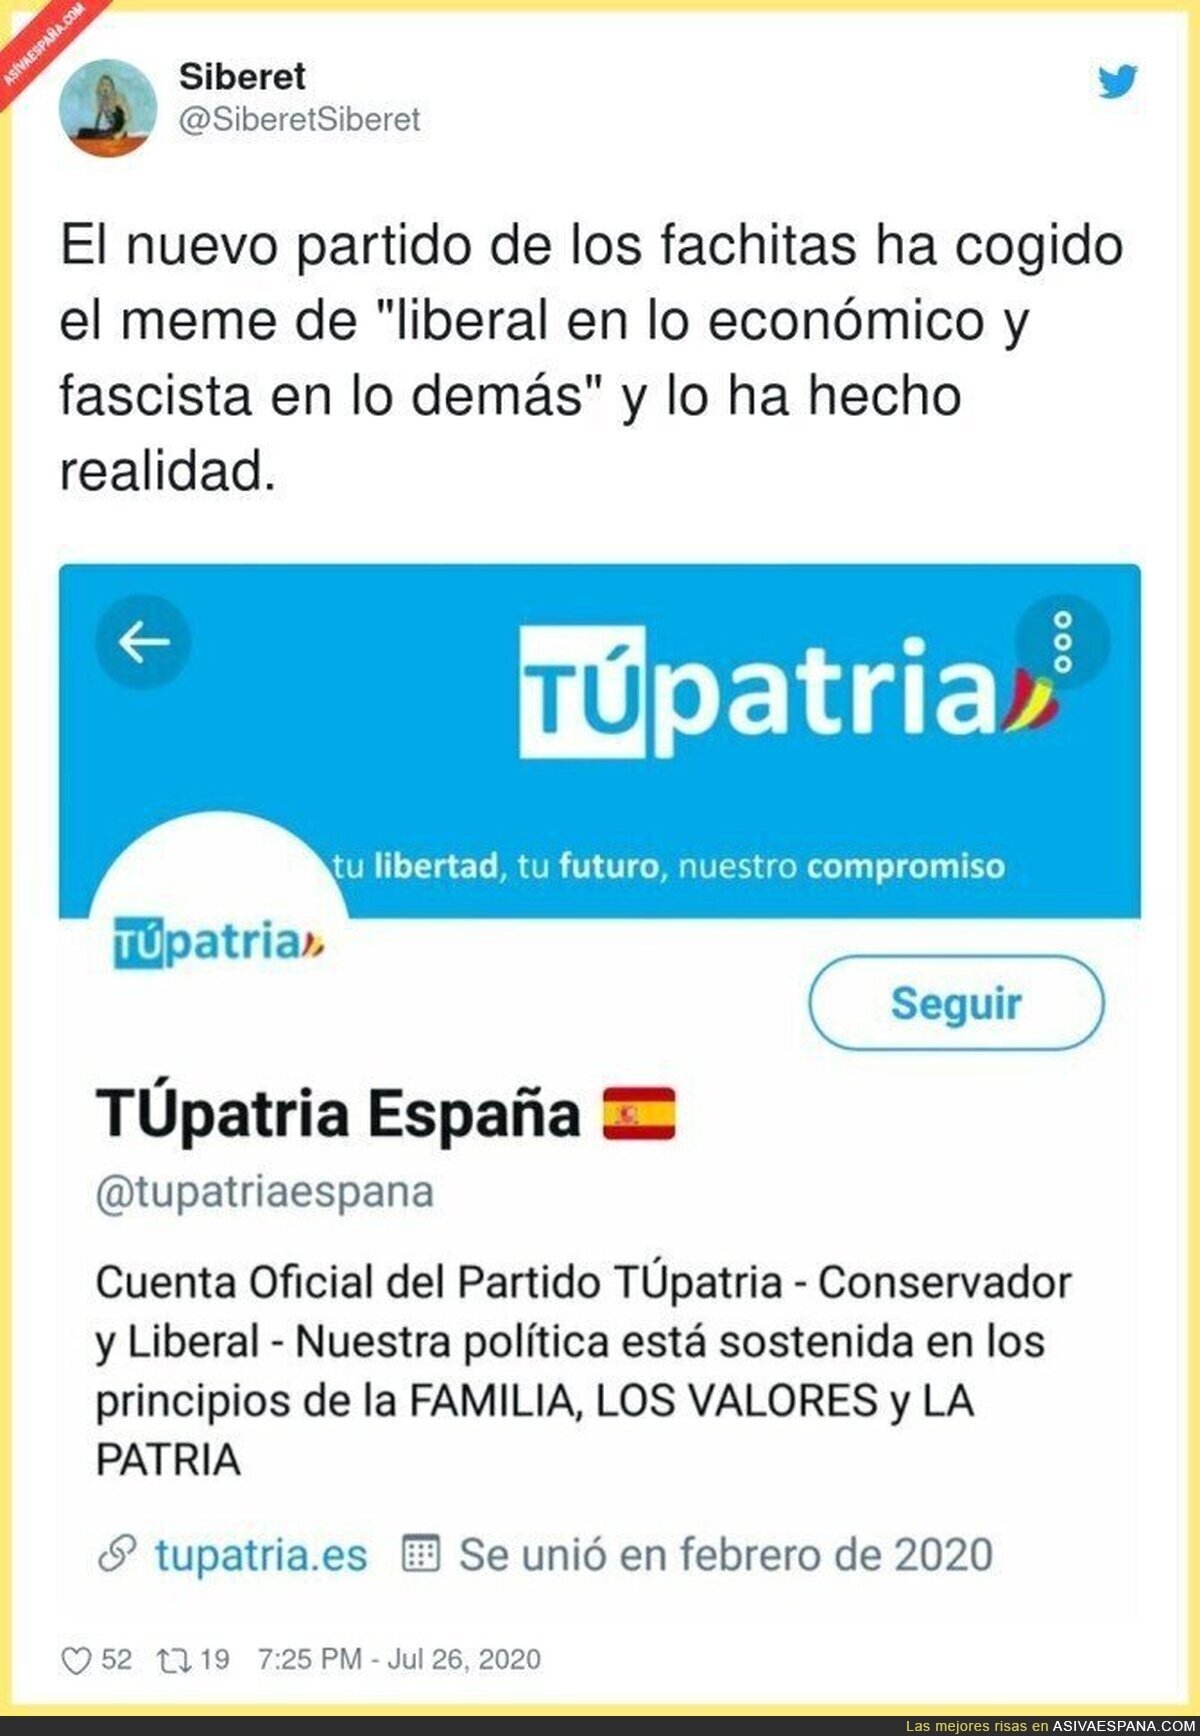 El nuevo partido patriota español